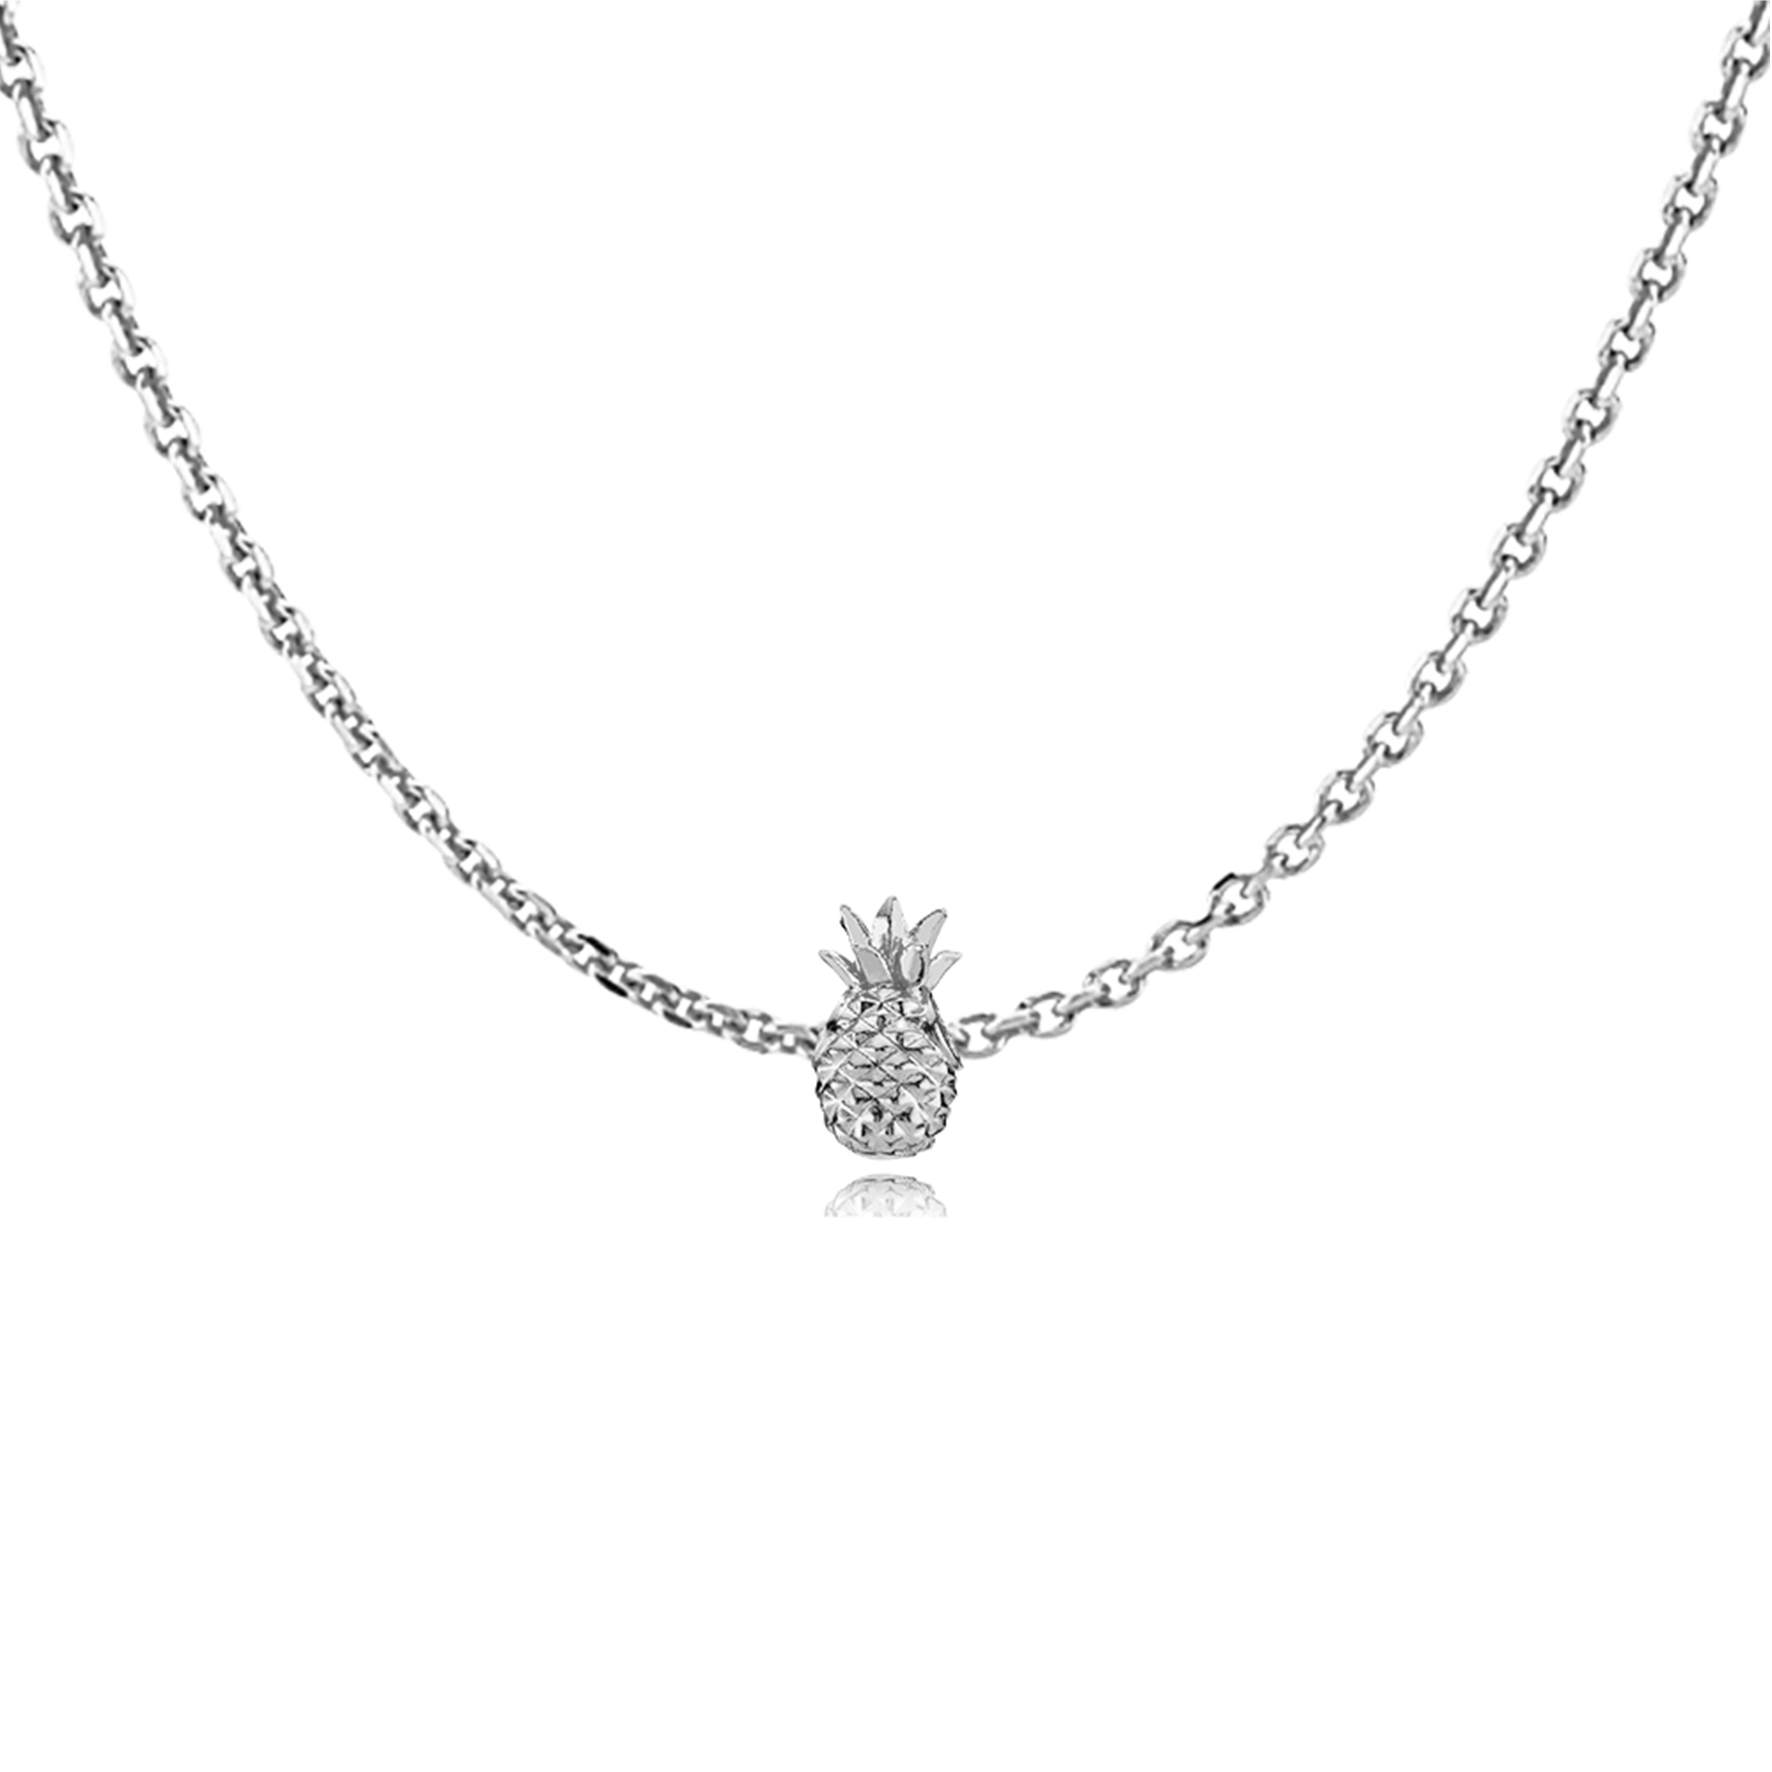 Anna by Sistie Pendant Necklace von Sistie in Silber Sterling 925